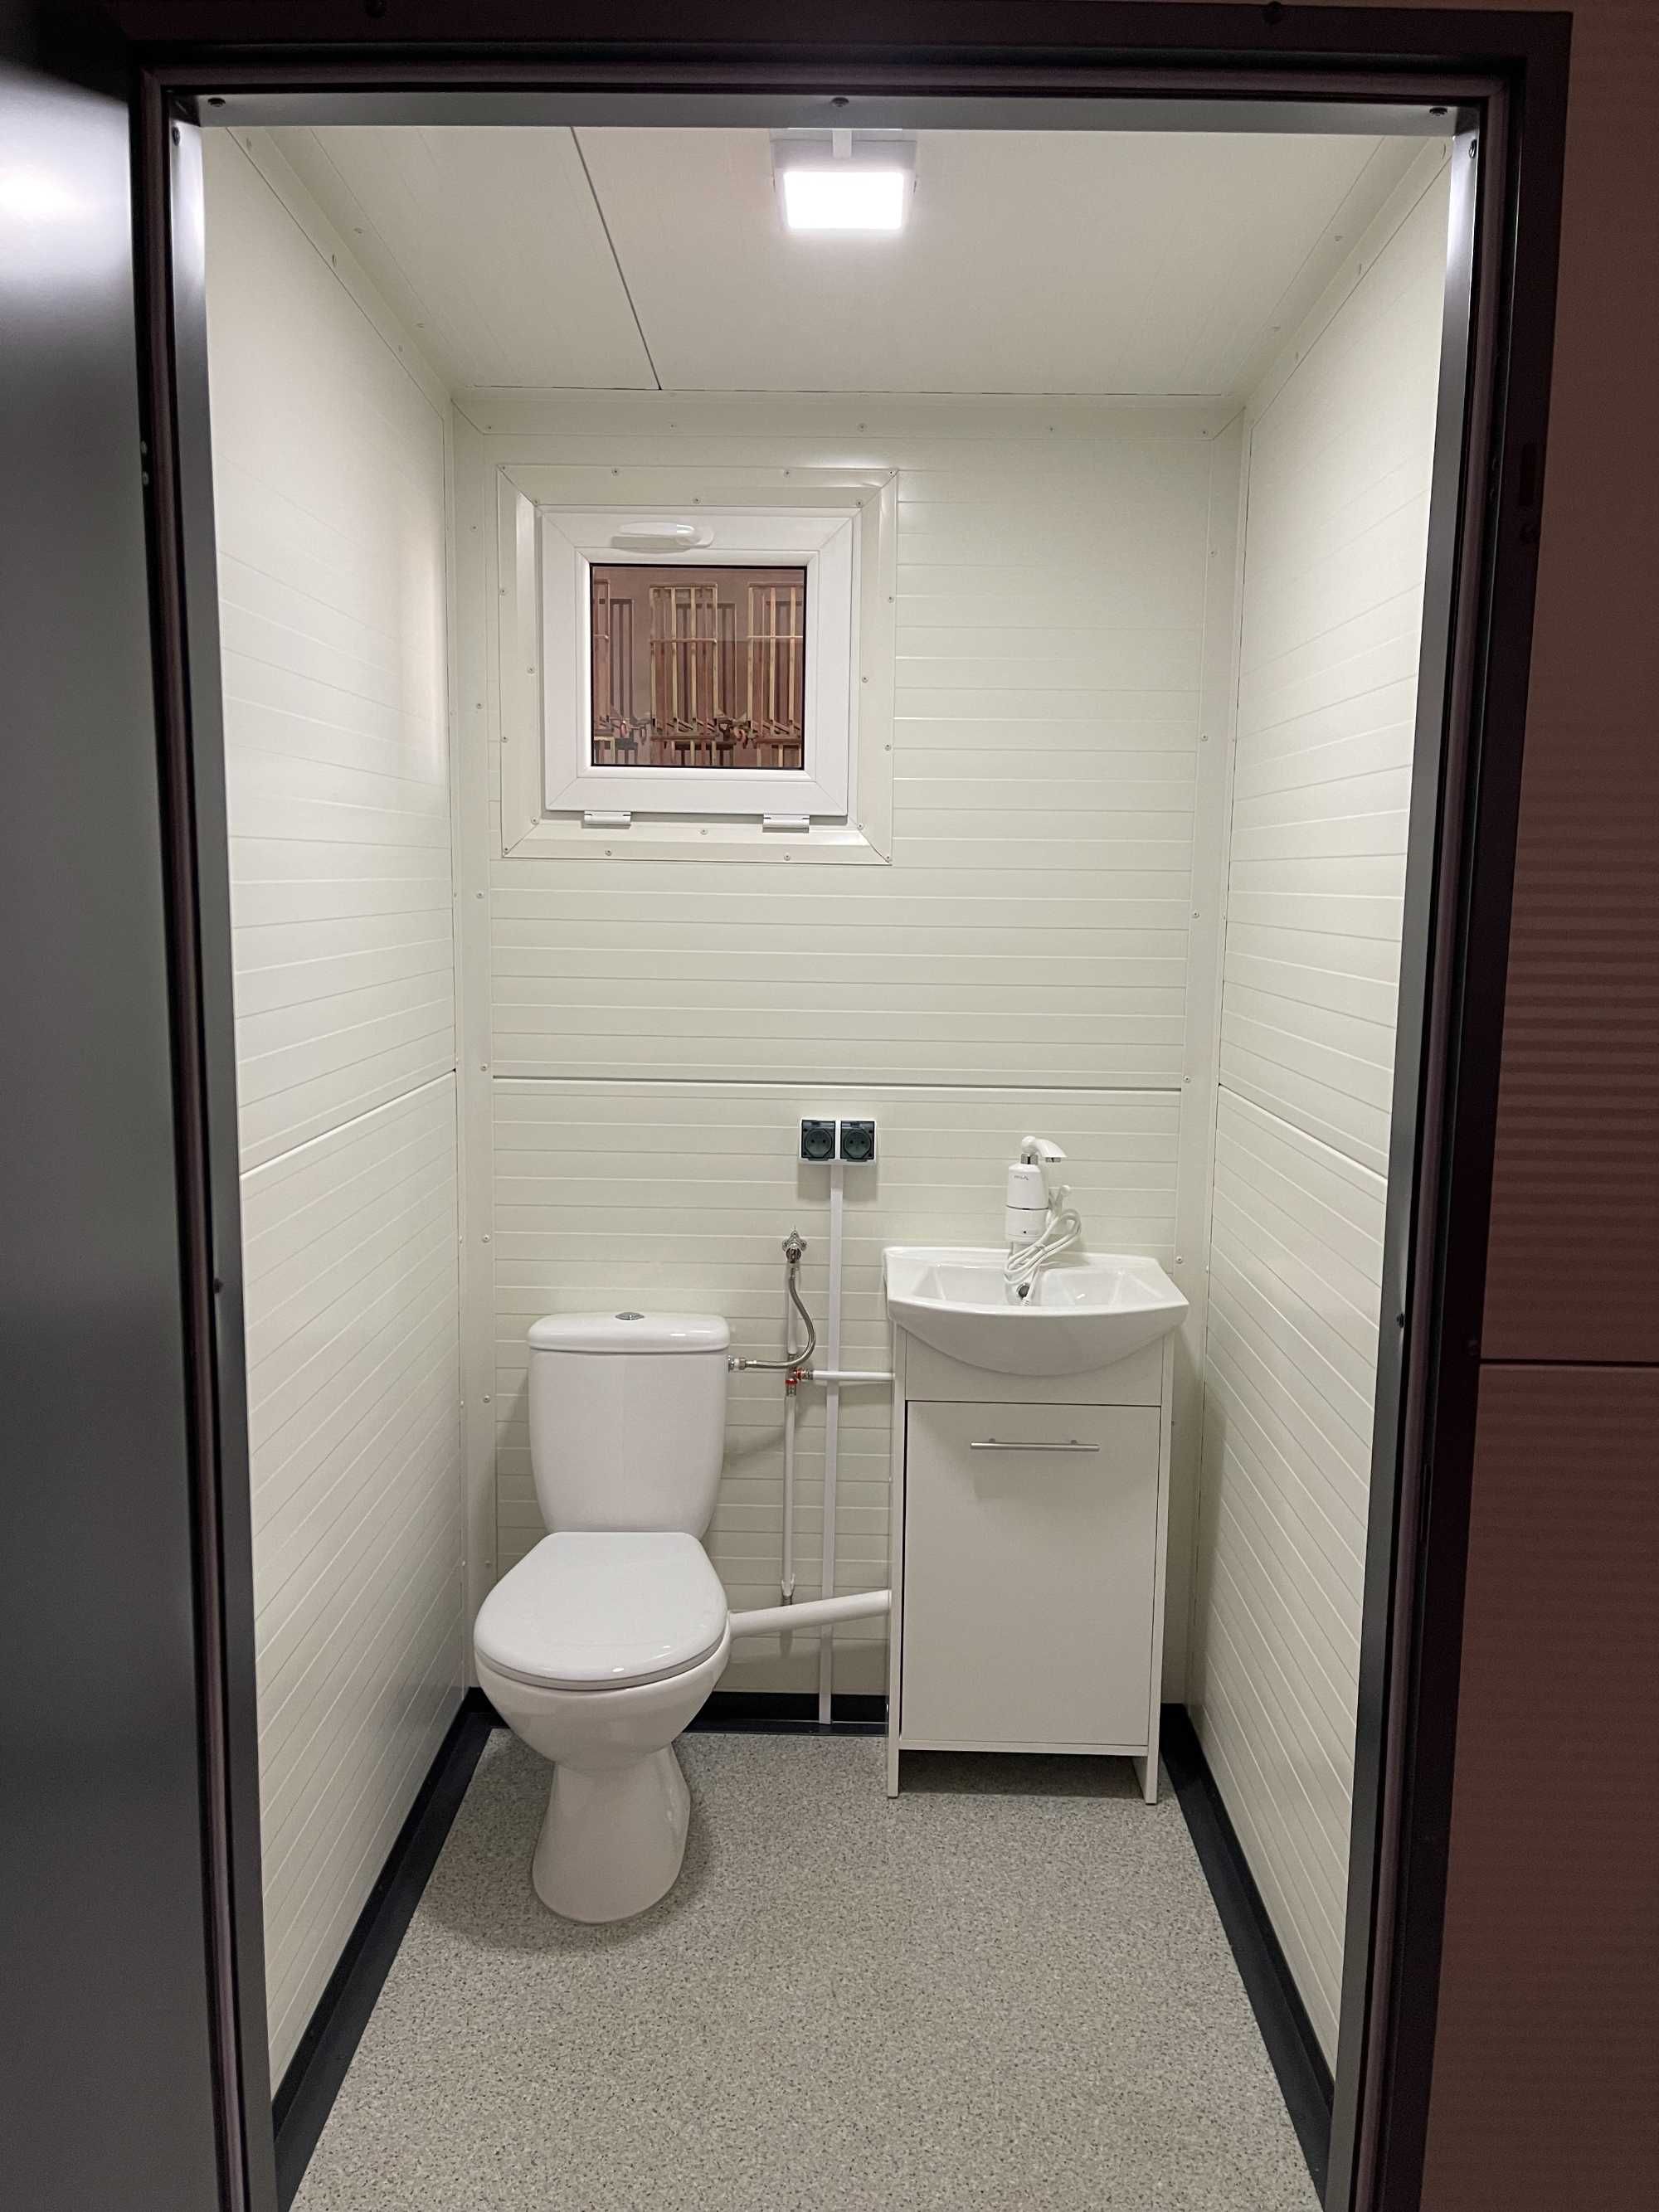 WC toaleta łazienka sanitarny pawilon kontener budka socjalny prysznic